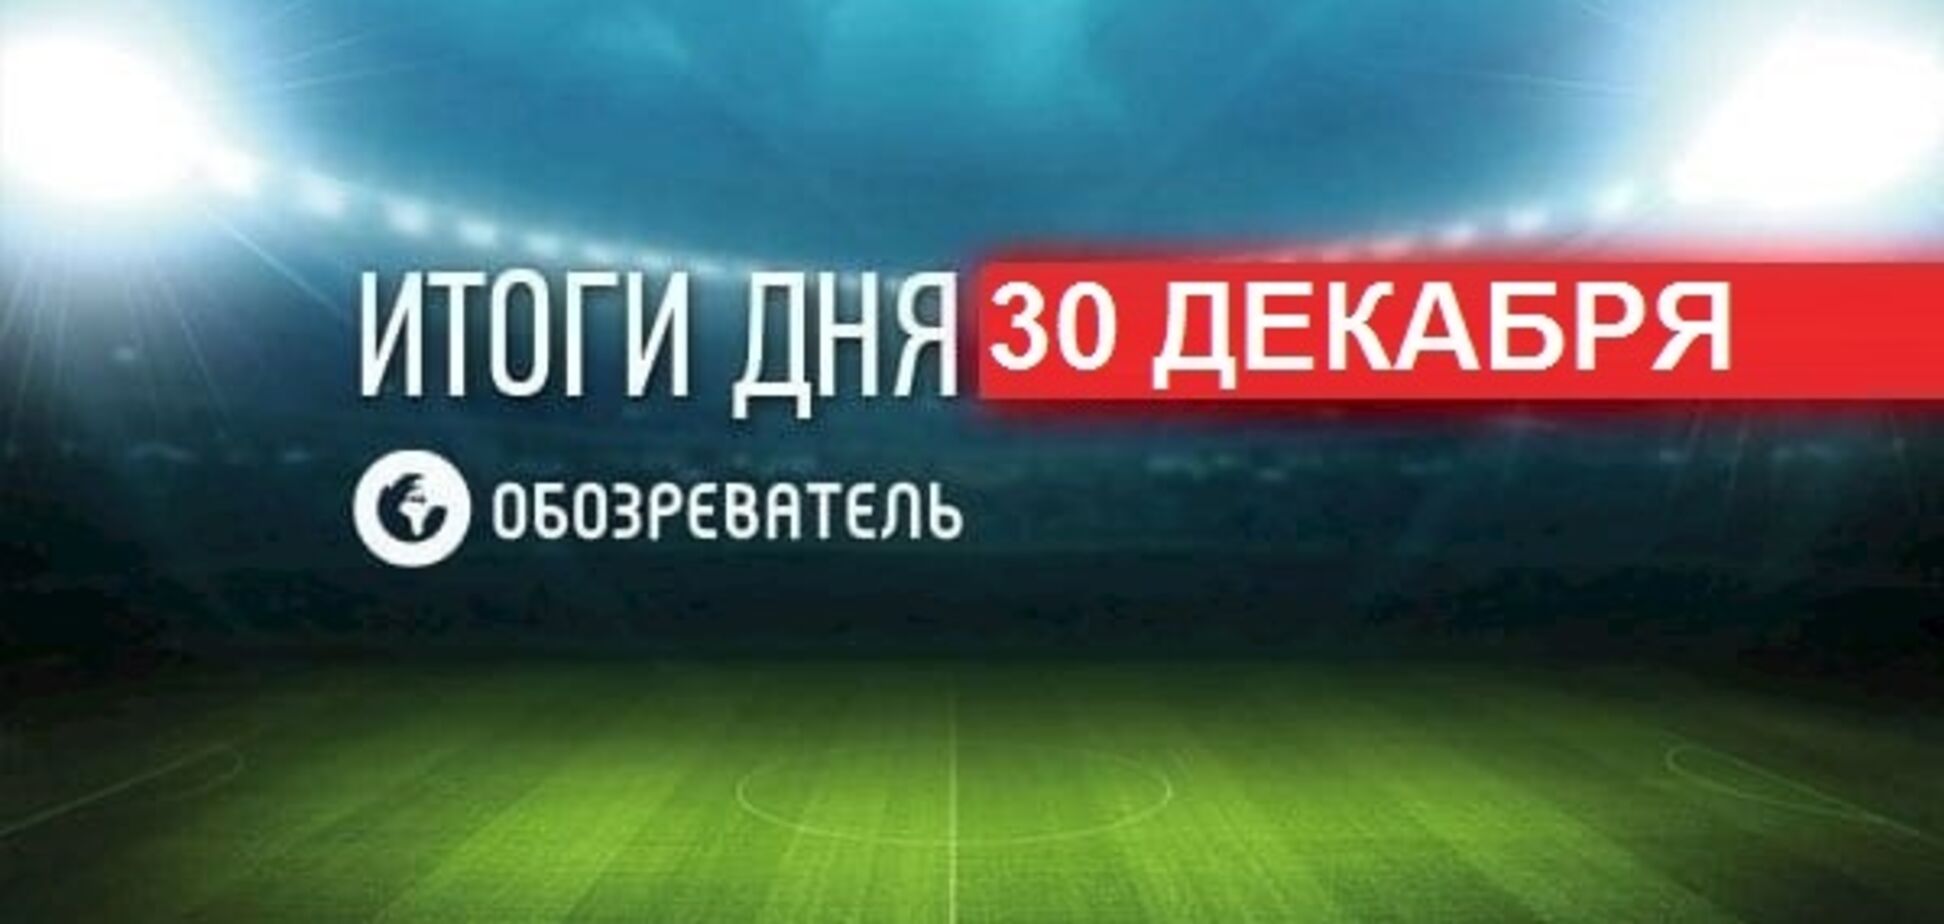 Усик обратился к команде Ломаченко: спортивные итоги 30 декабря